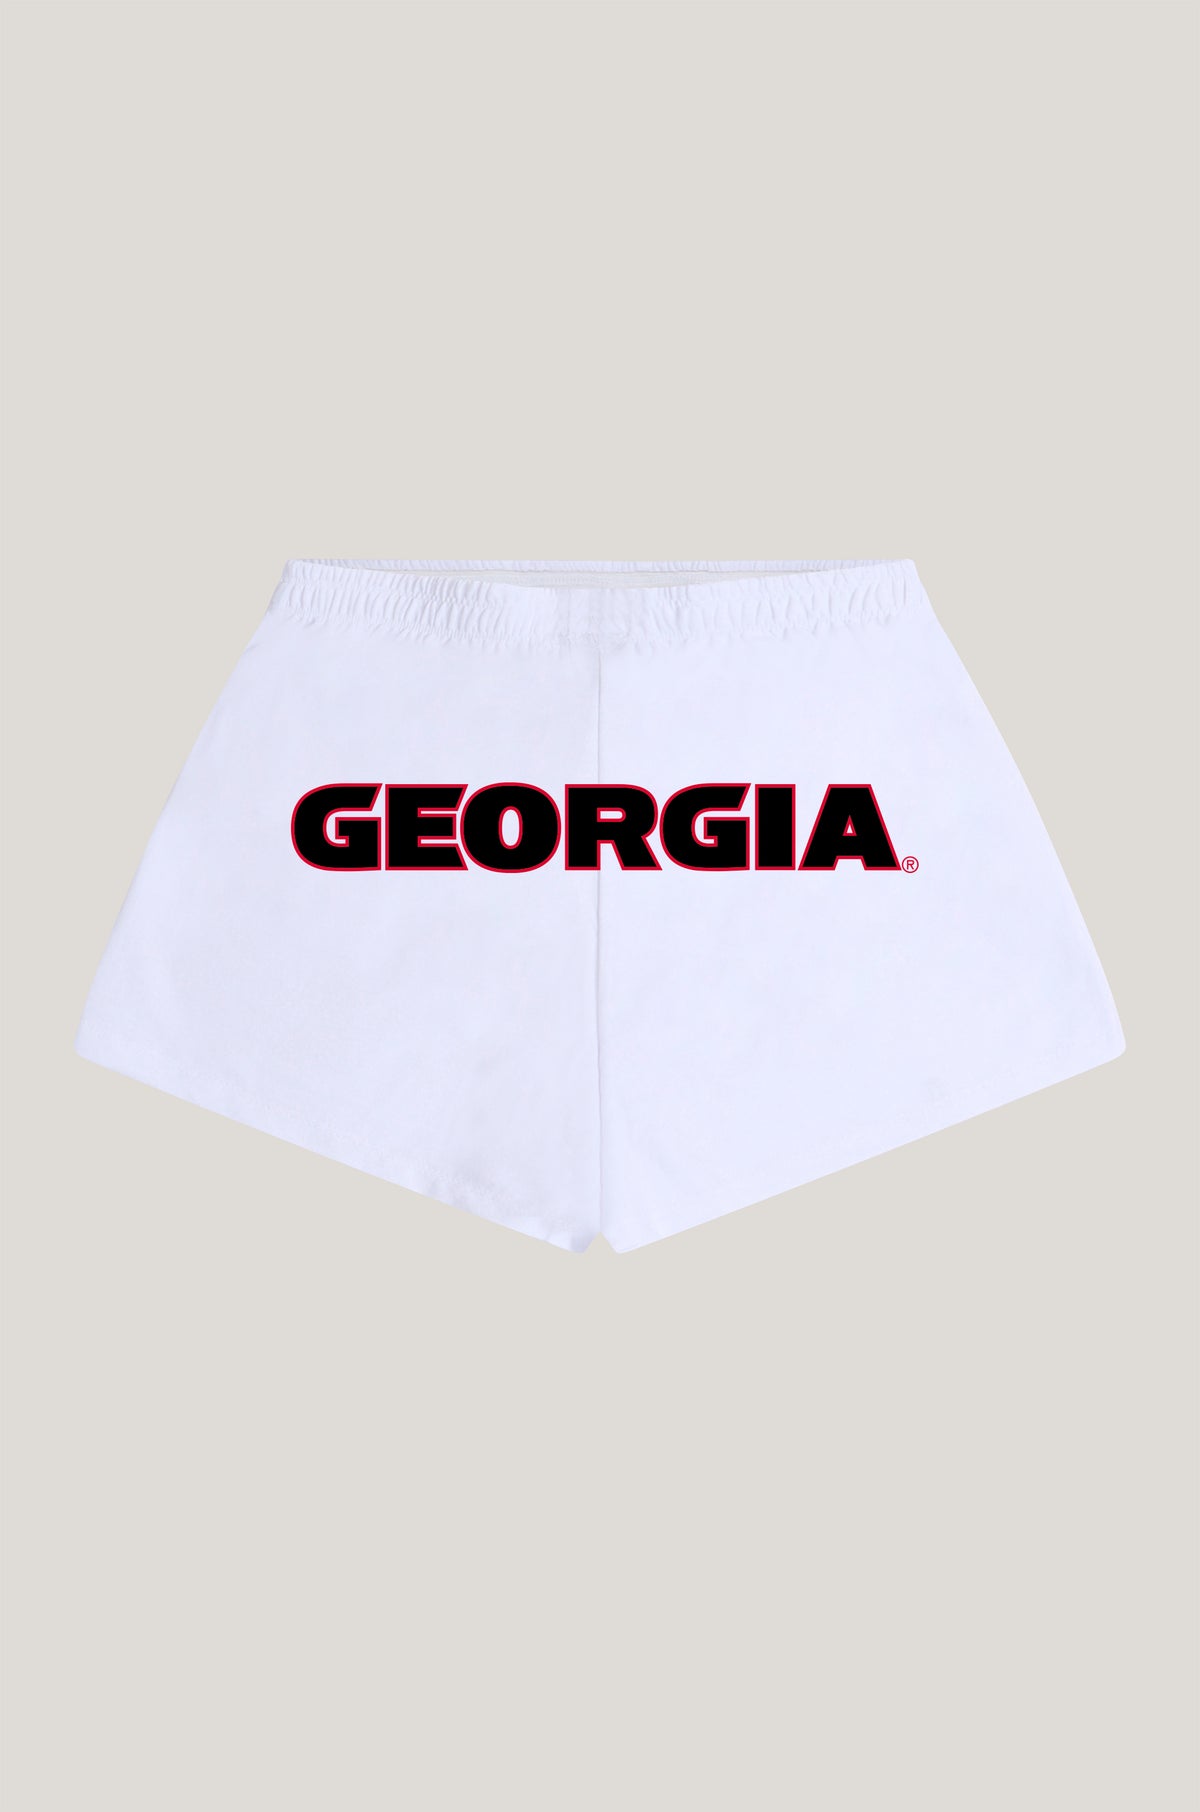 University of Georgia P.E. Shorts